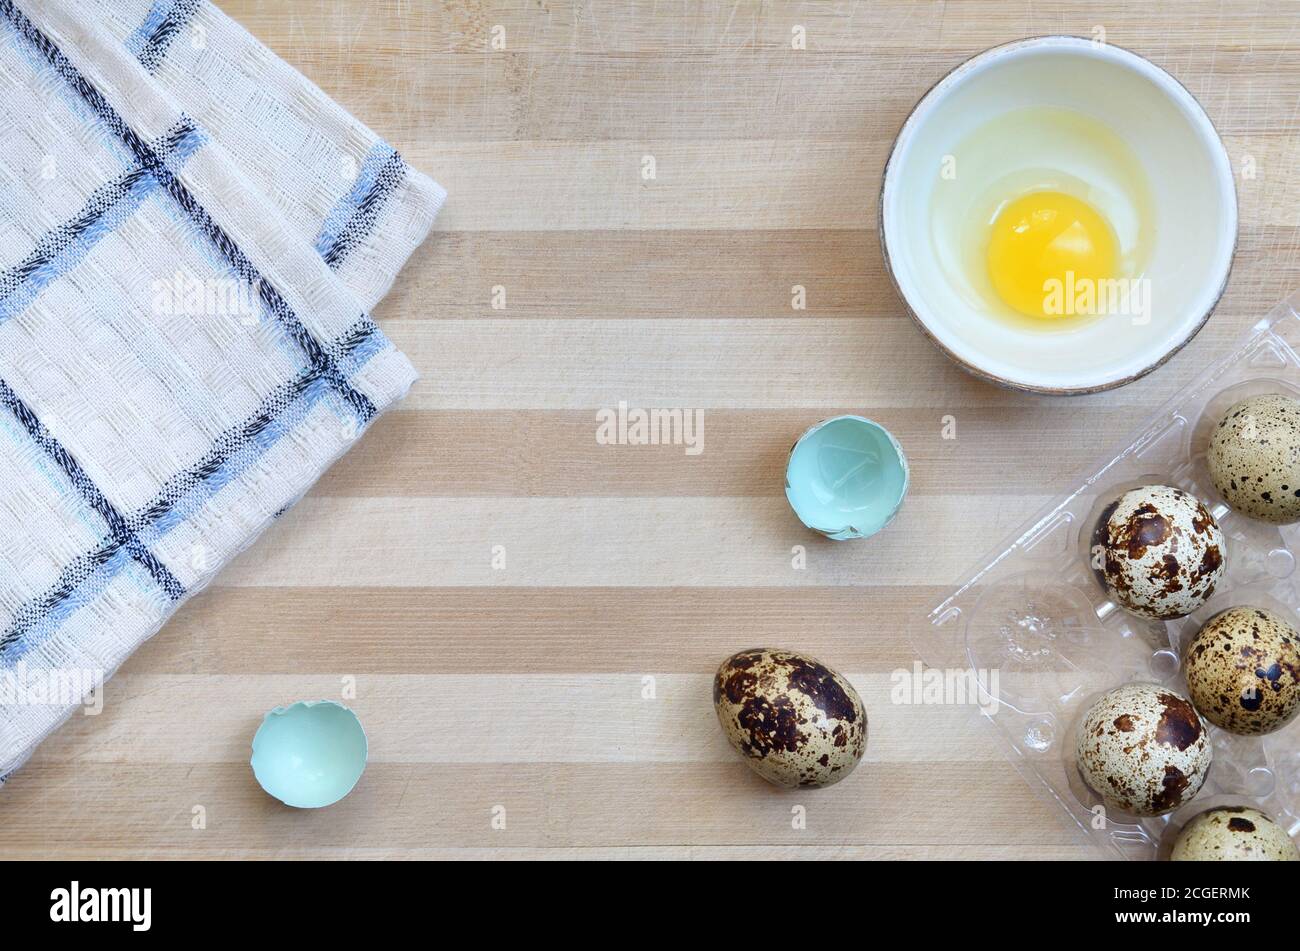 Wachtel Eier in den Prozess des Kochens auf einem hölzernen Schneidebrett mit einem Küchentuch Nahaufnahme mit einem Kopierplatz, Draufsicht. Gesunde Ernährung Konzept. Stockfoto